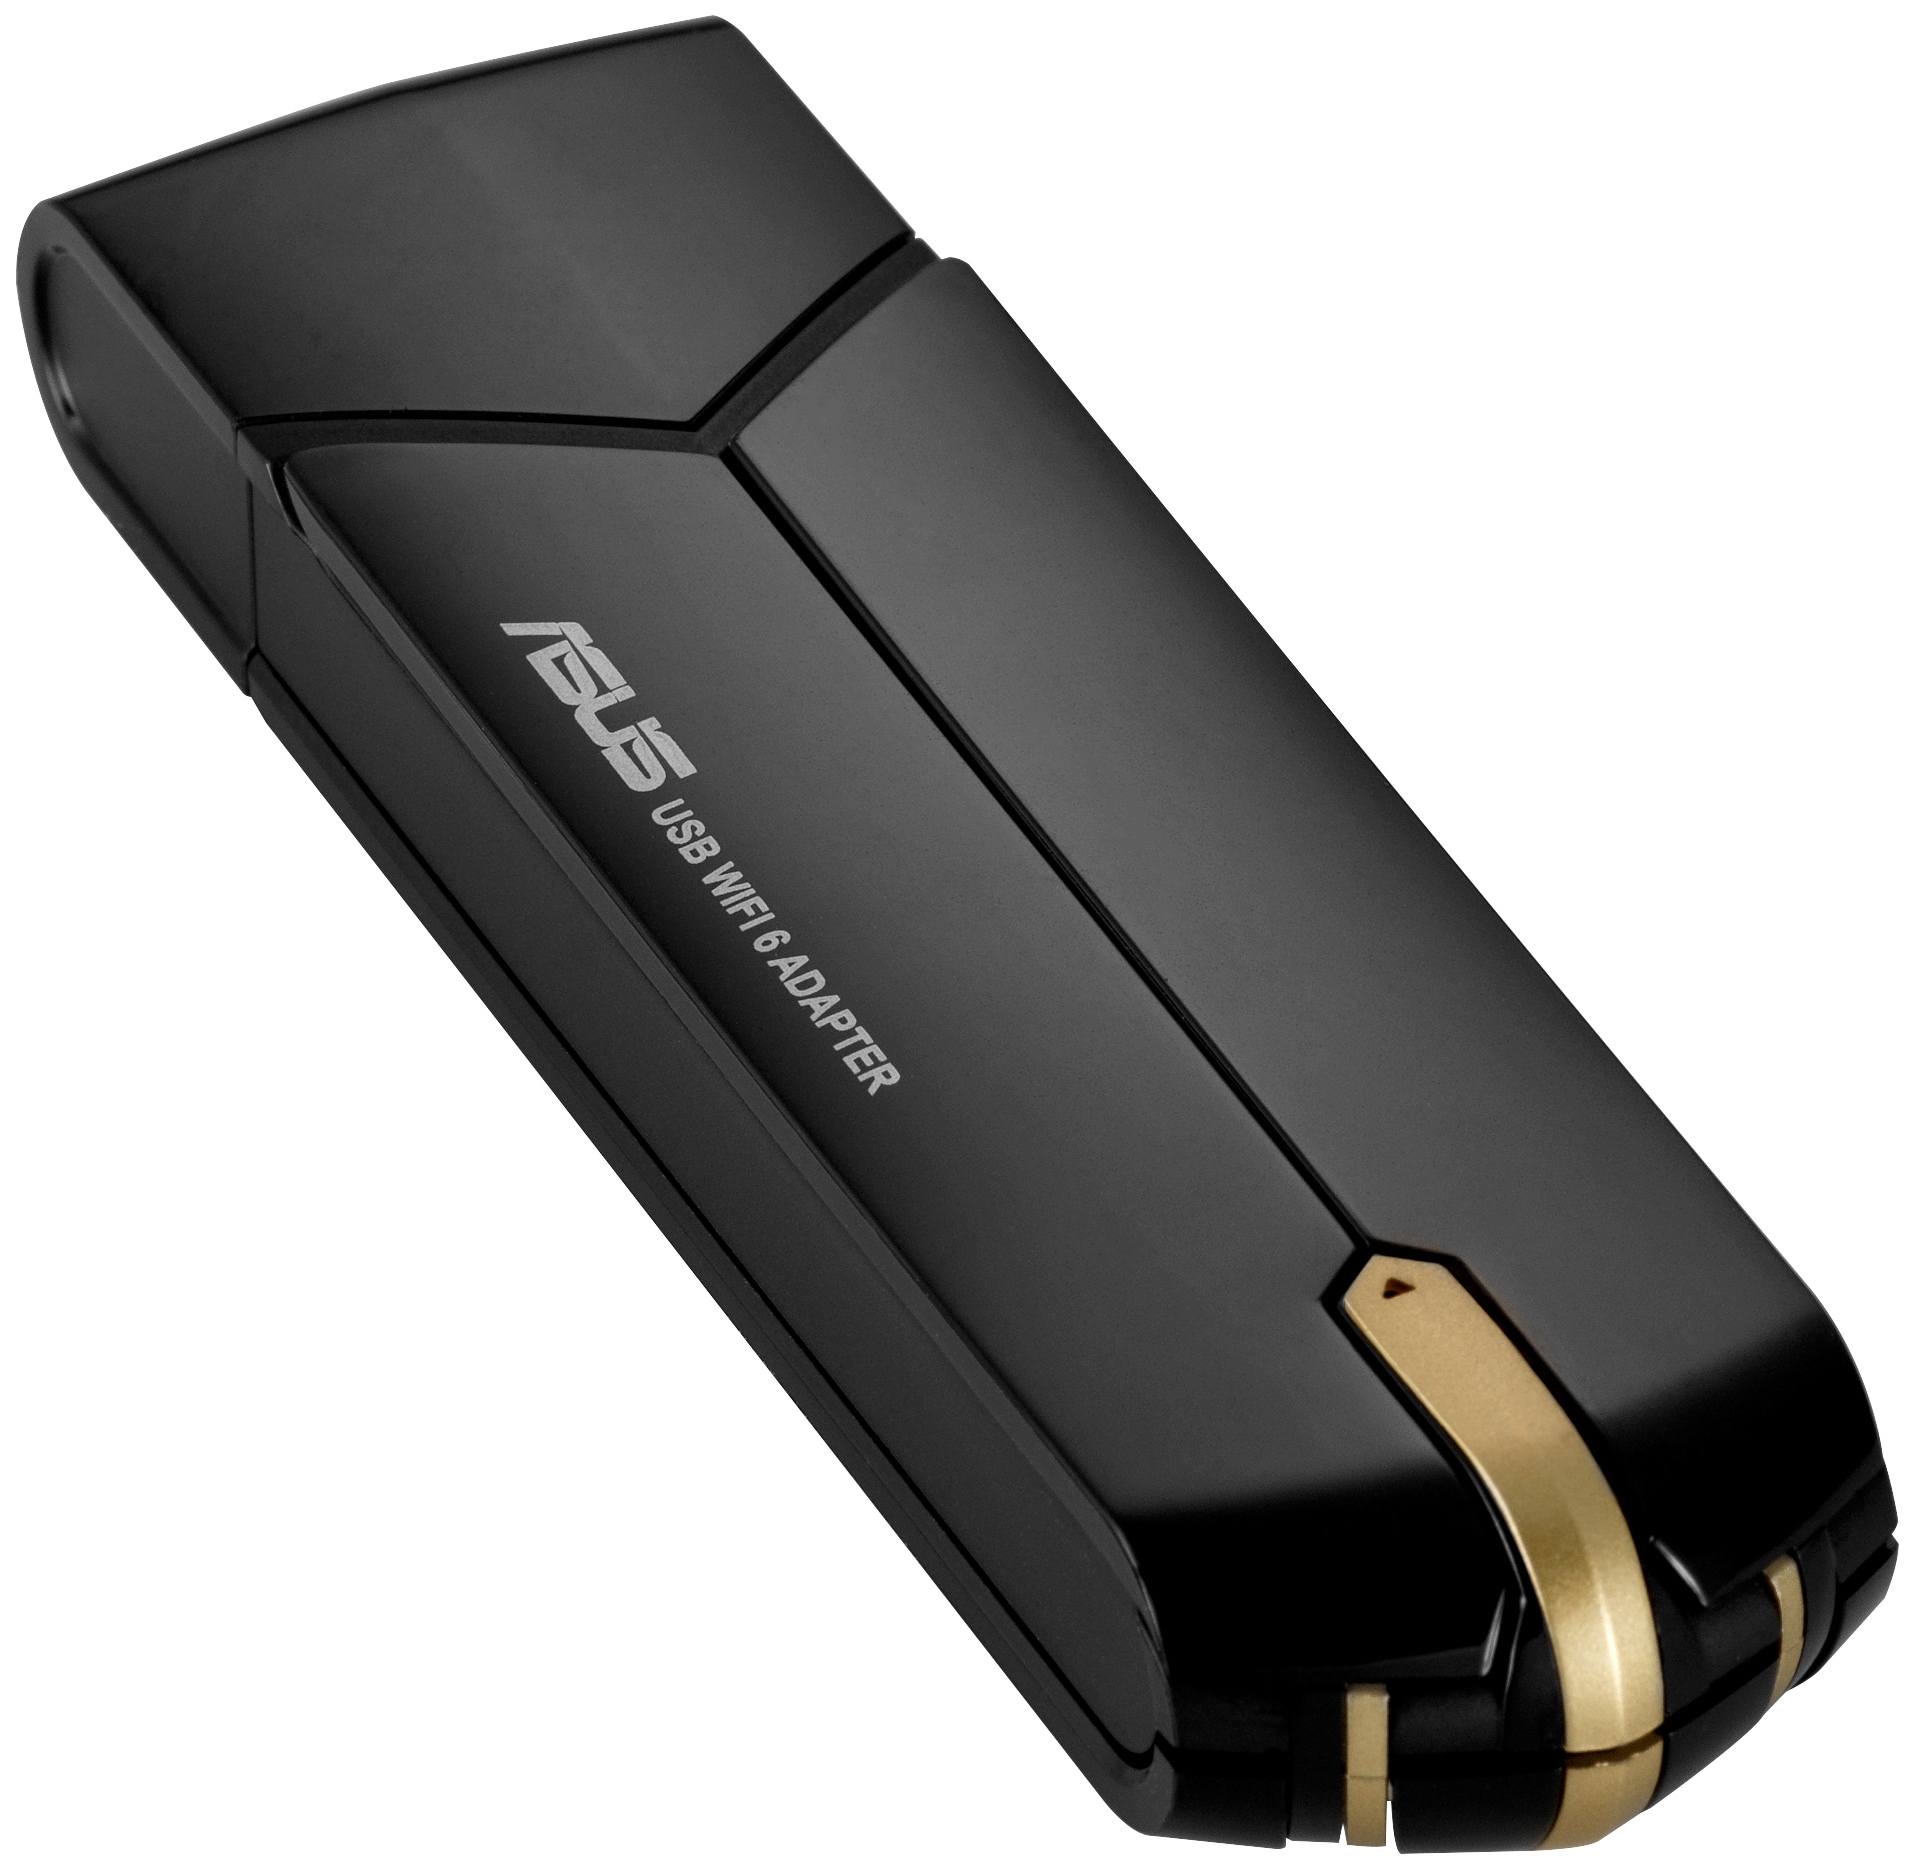 Asus USB-AX56 AX1800 V1 USB WiFi sovitin - Gigantti verkkokauppa